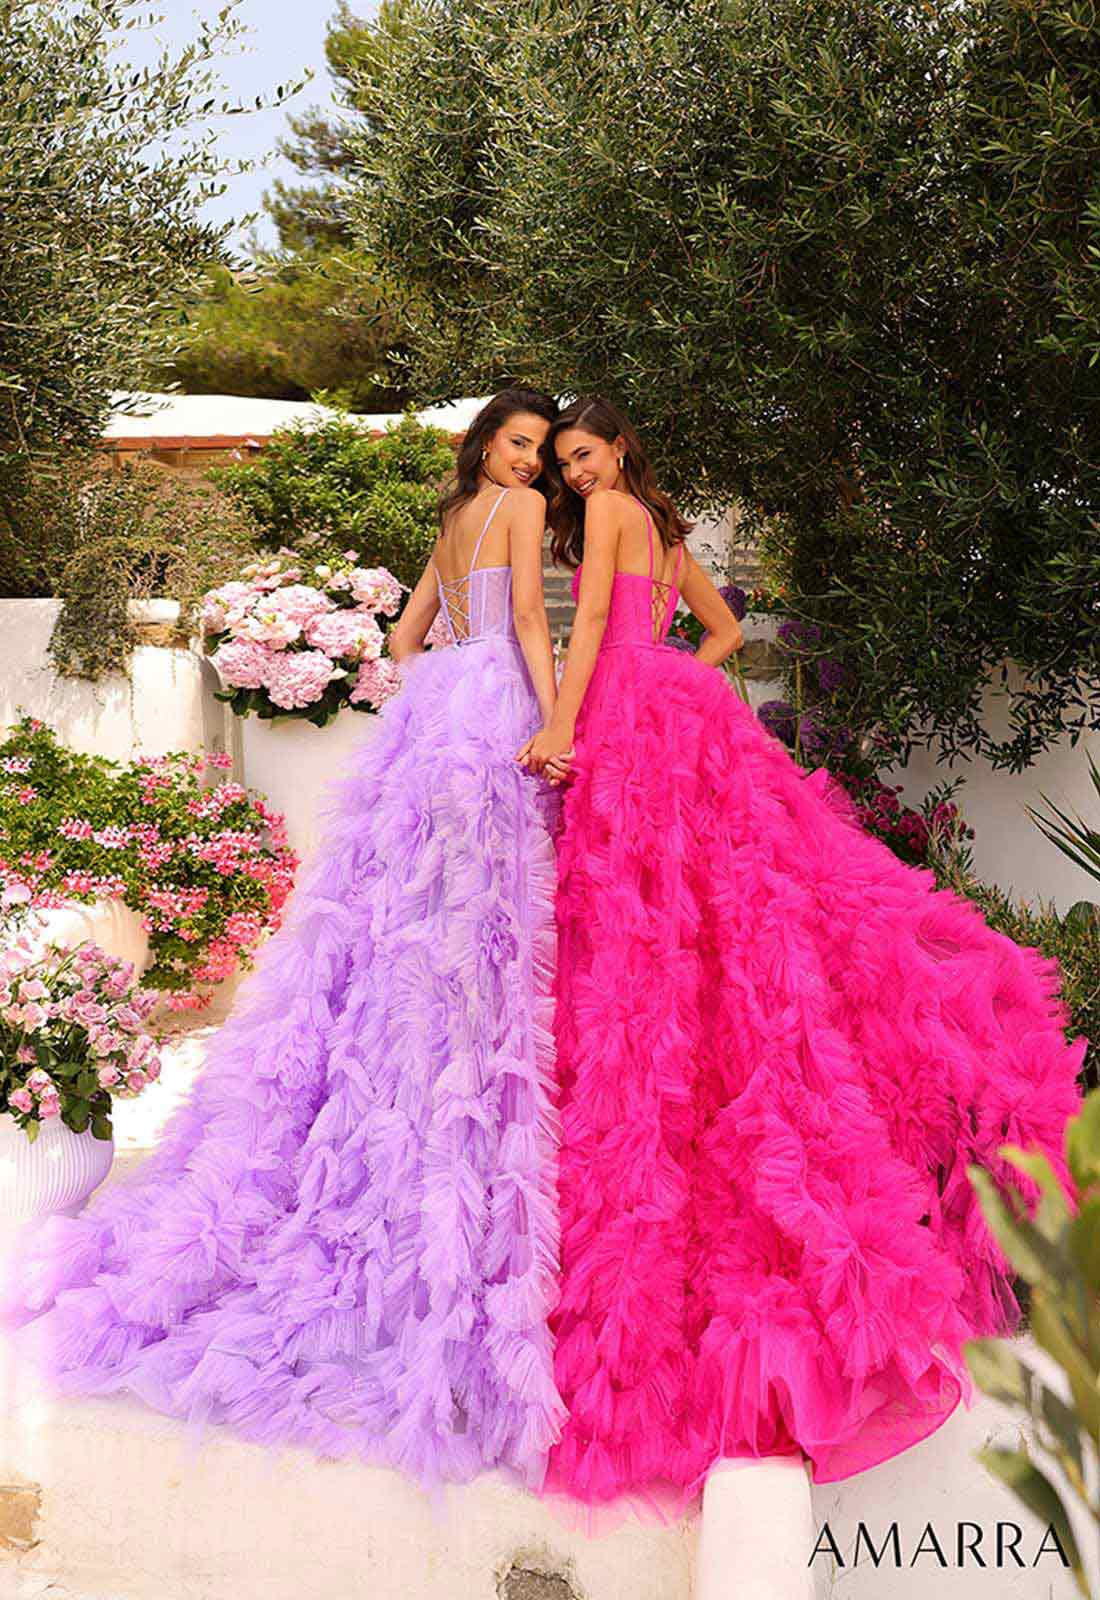 Amarra Lilac Jenner Prom Dress for Little Black Dress